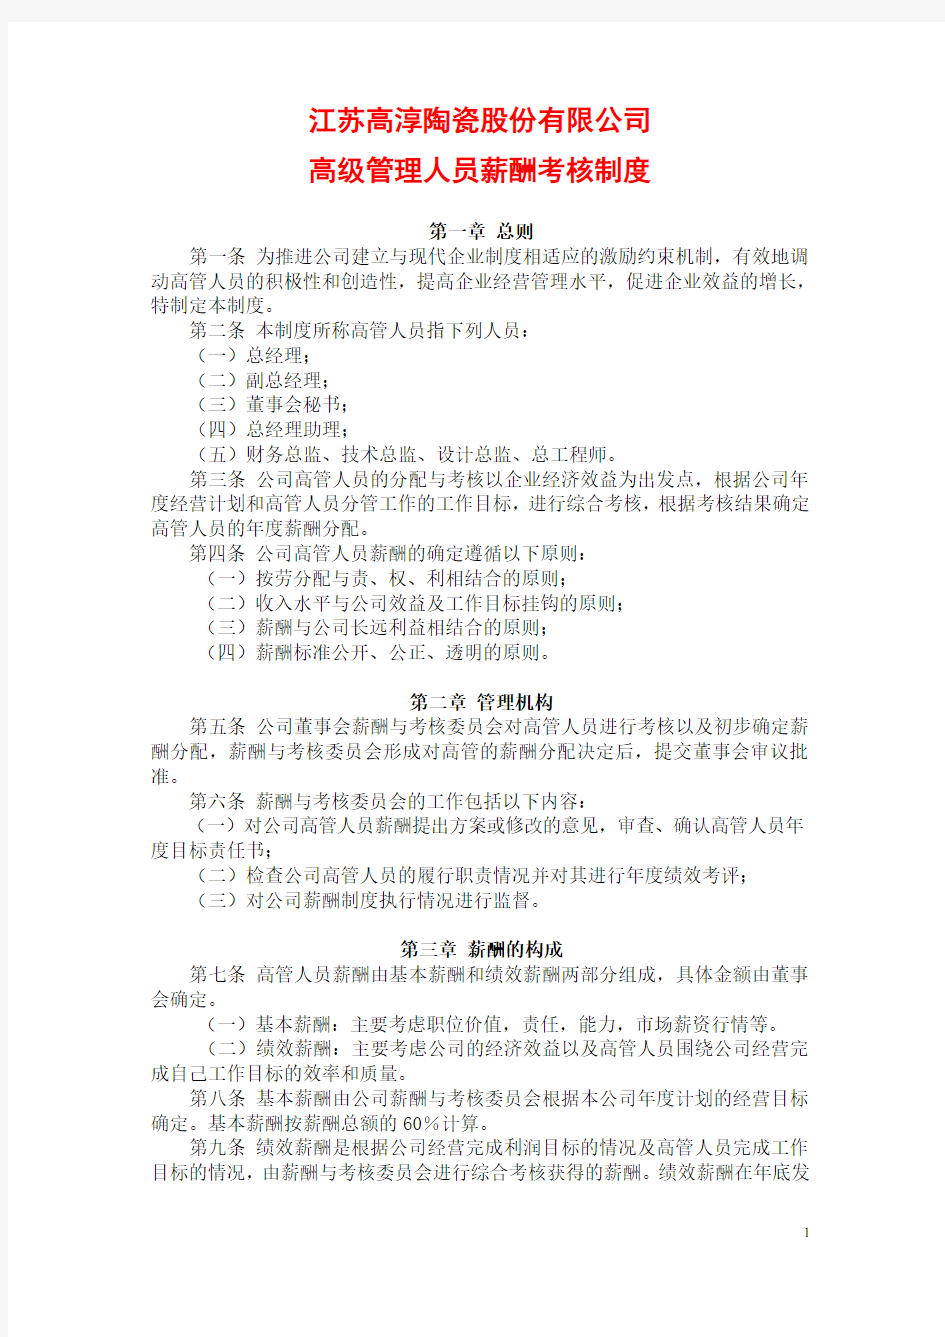 江苏高淳陶瓷股份有限公司高级管理人员薪酬考核制度